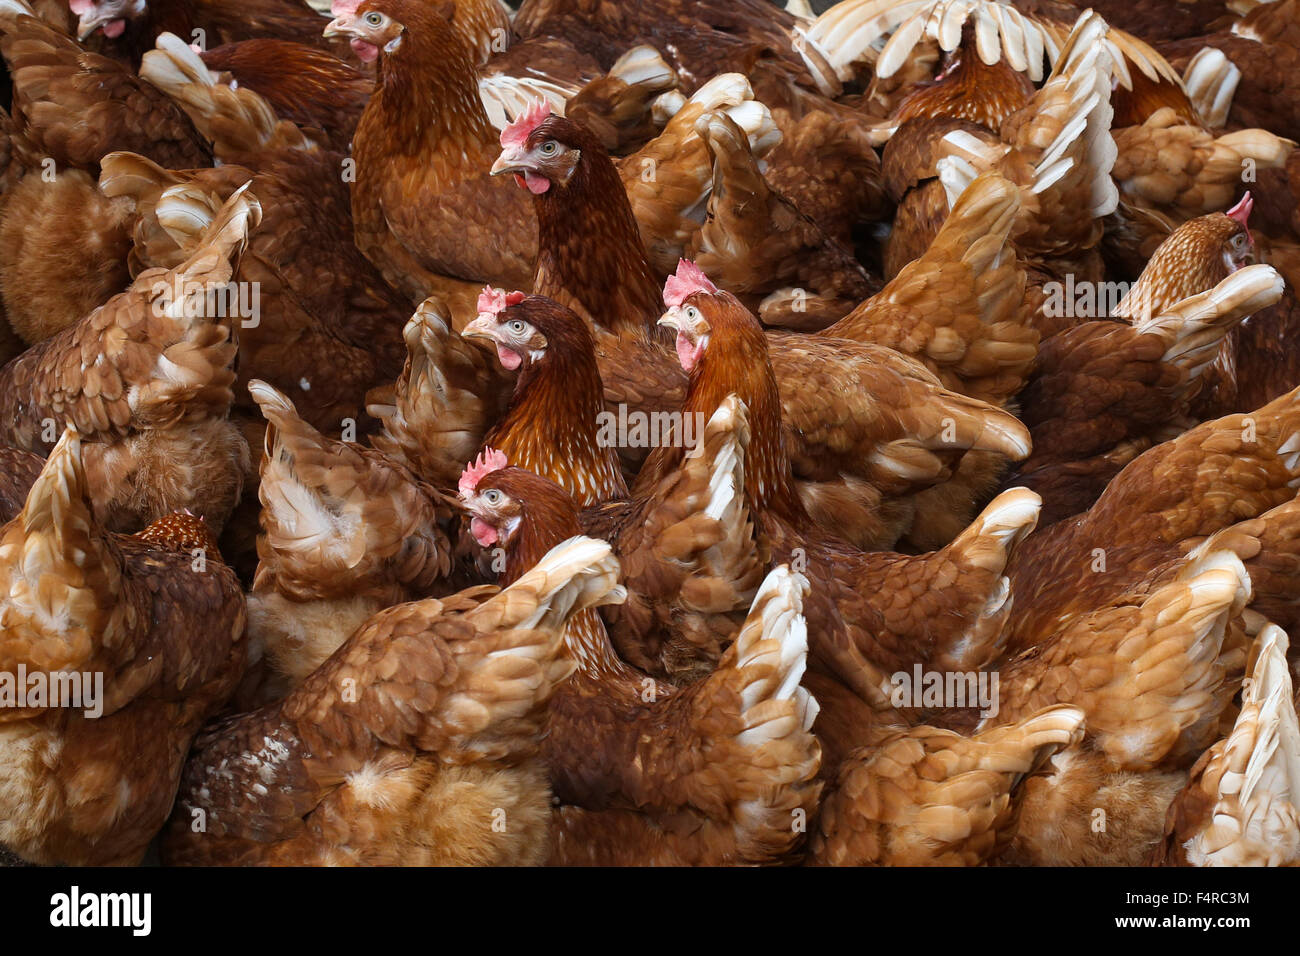 British free range laying hens. Stock Photo